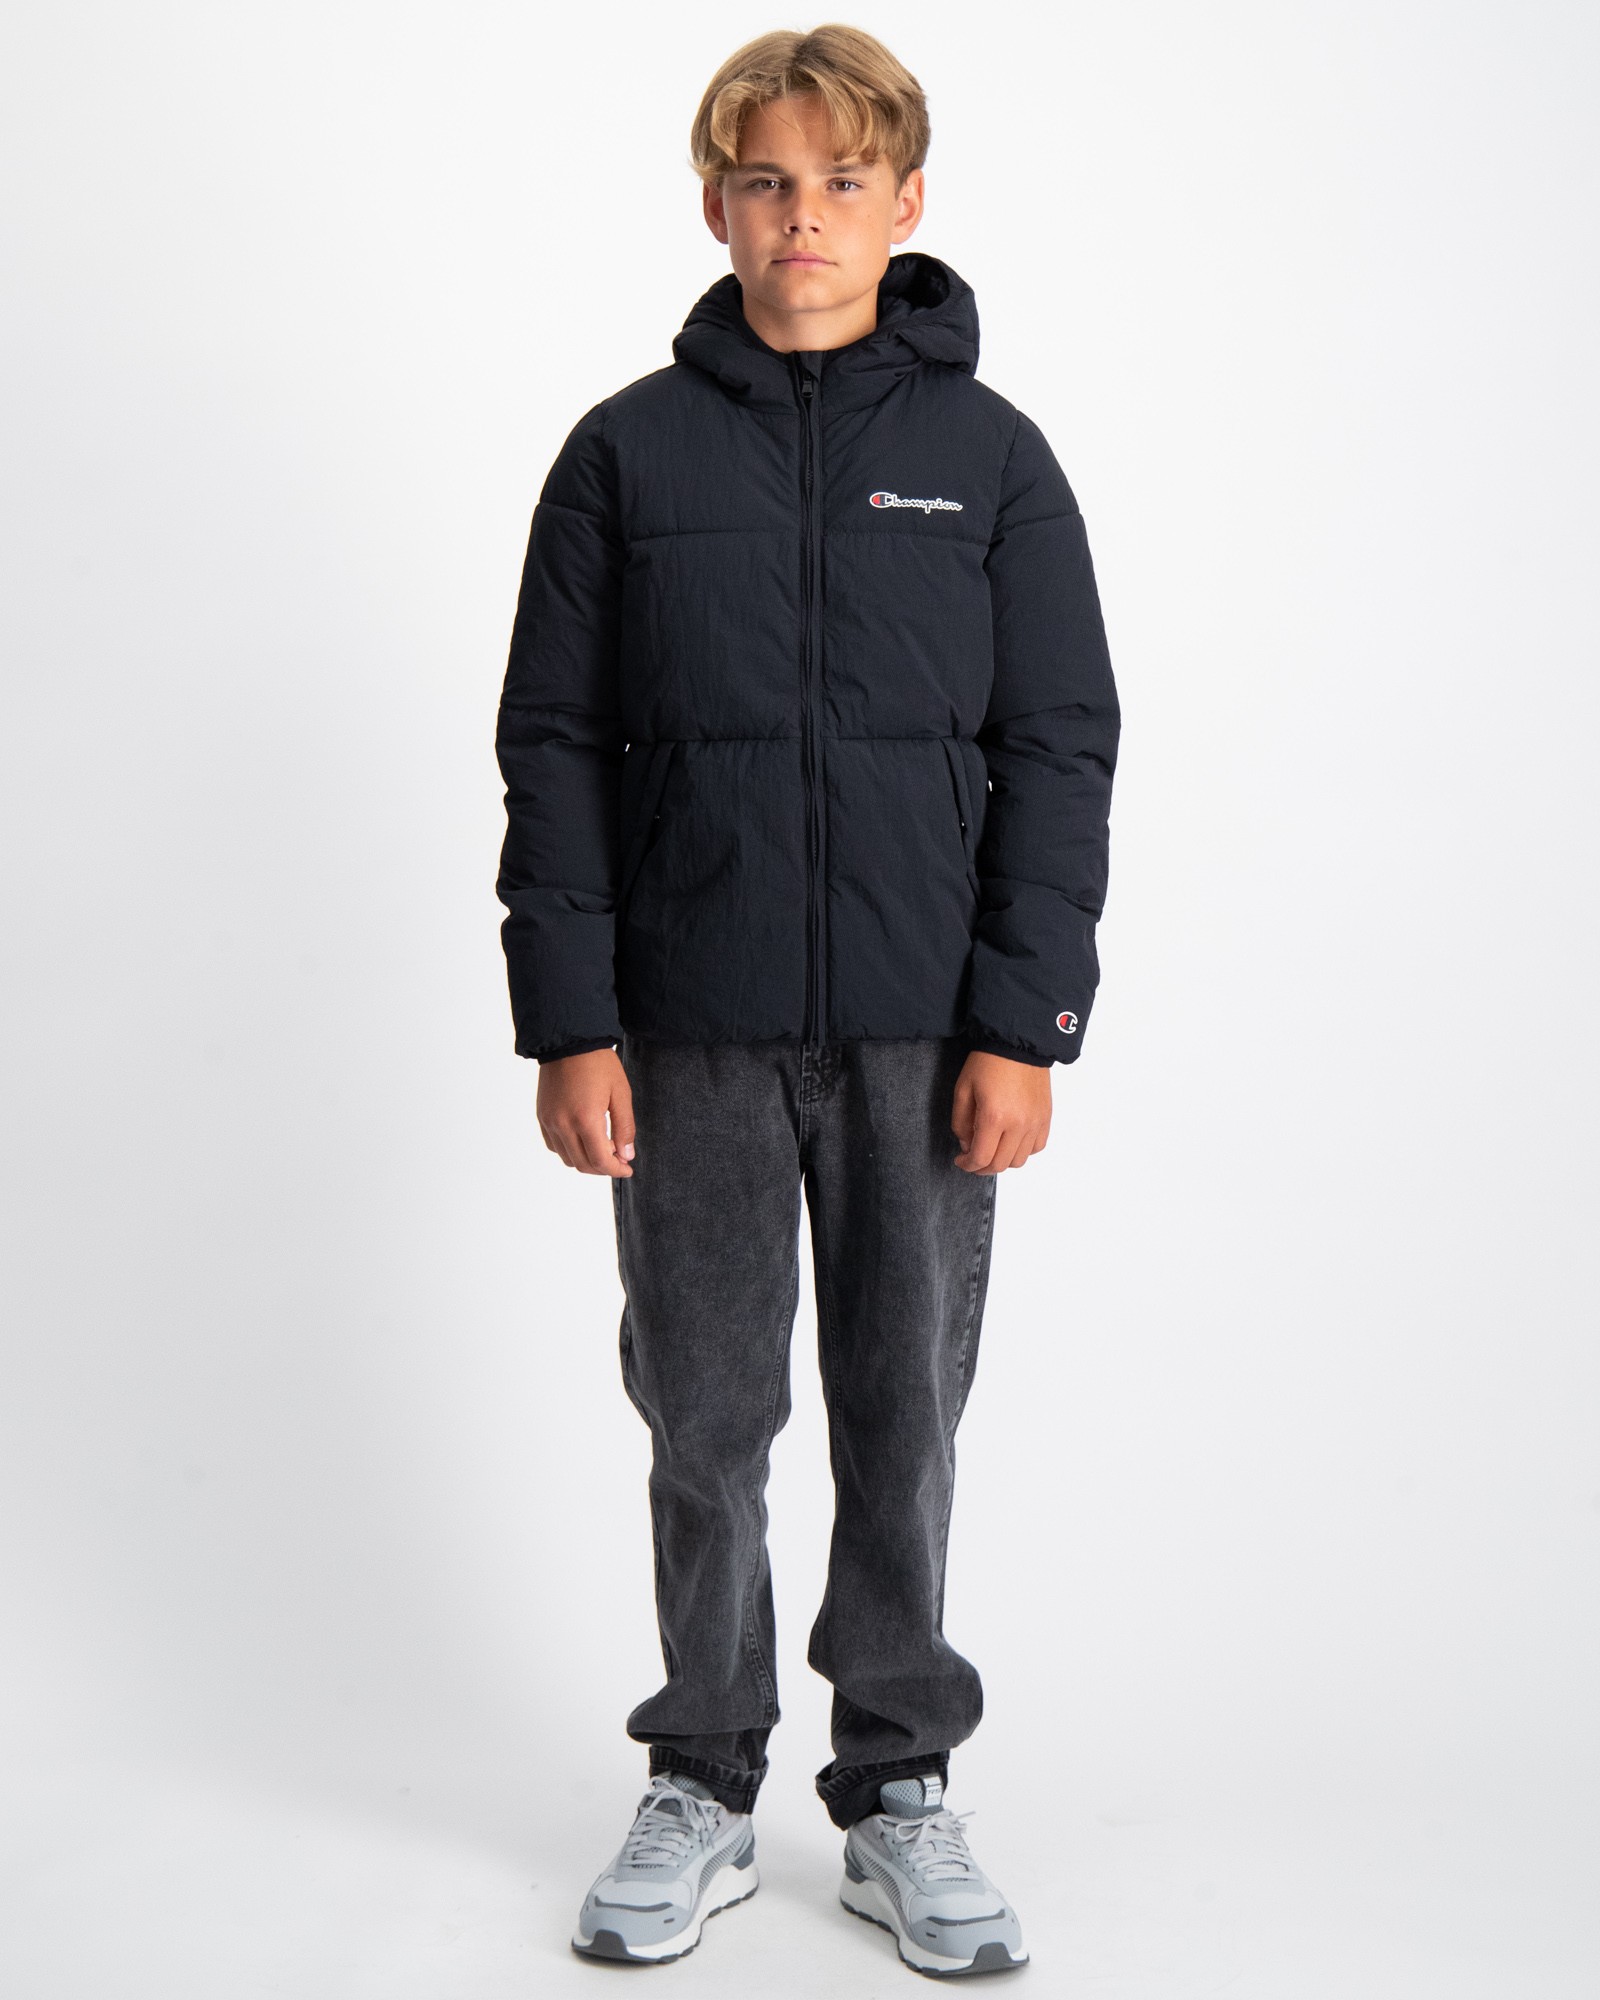 Schwarz Hooded Jacket für Jungen | Kids Brand Store